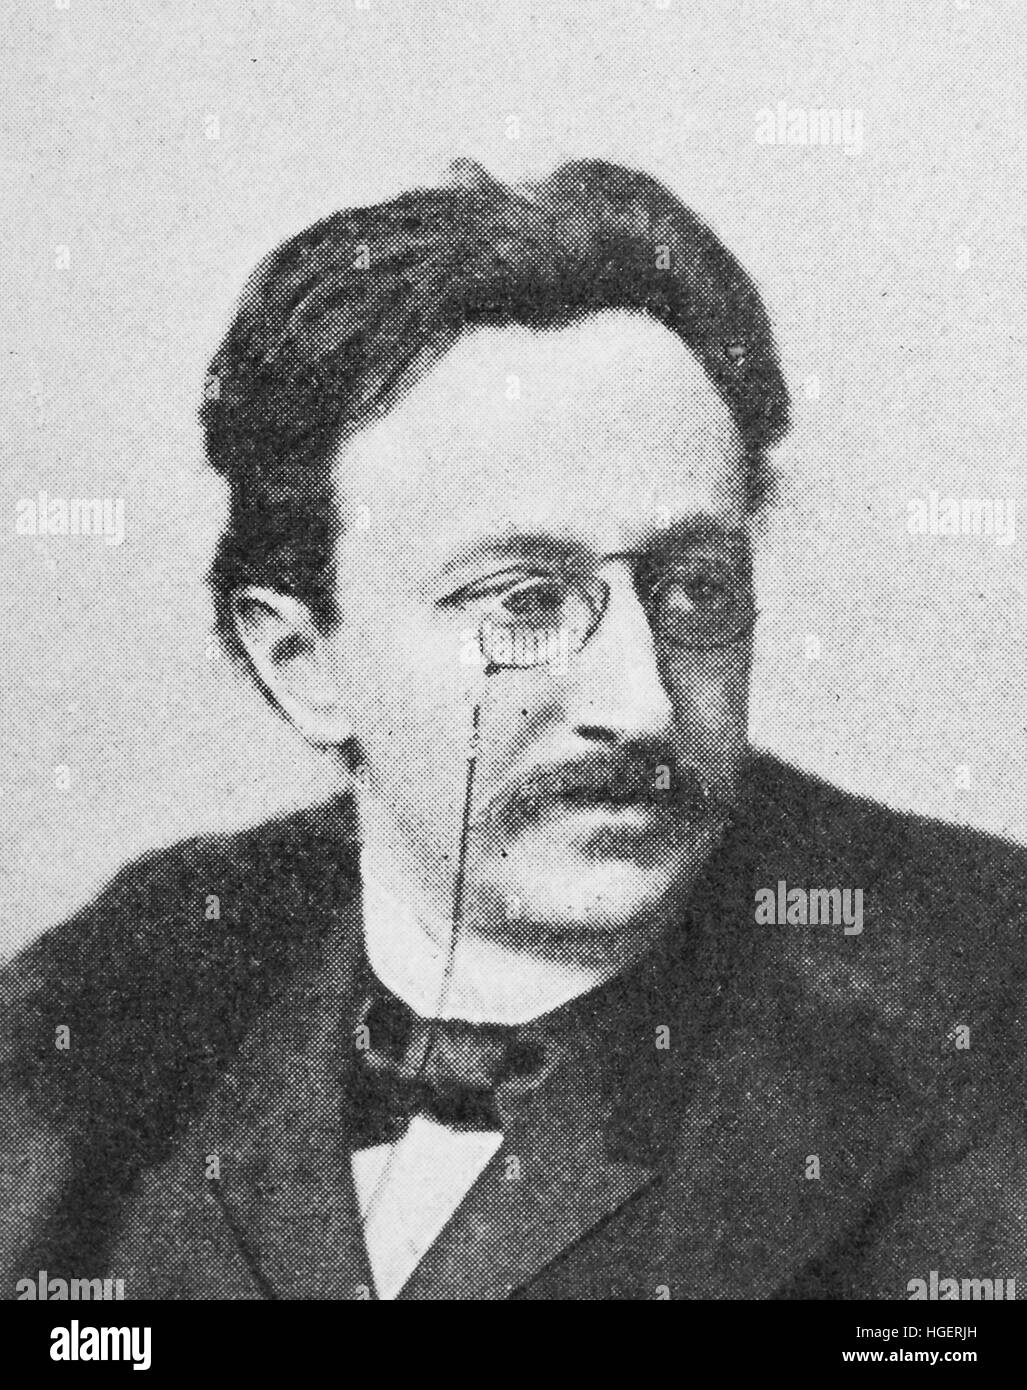 Max Halbe, war 4. November 1865 - 30. November 1944, deutscher Dramatiker und Hauptexponent des Naturalismus, Reproduktion eines Fotos aus dem Jahr 1895, digital verbessert Stockfoto